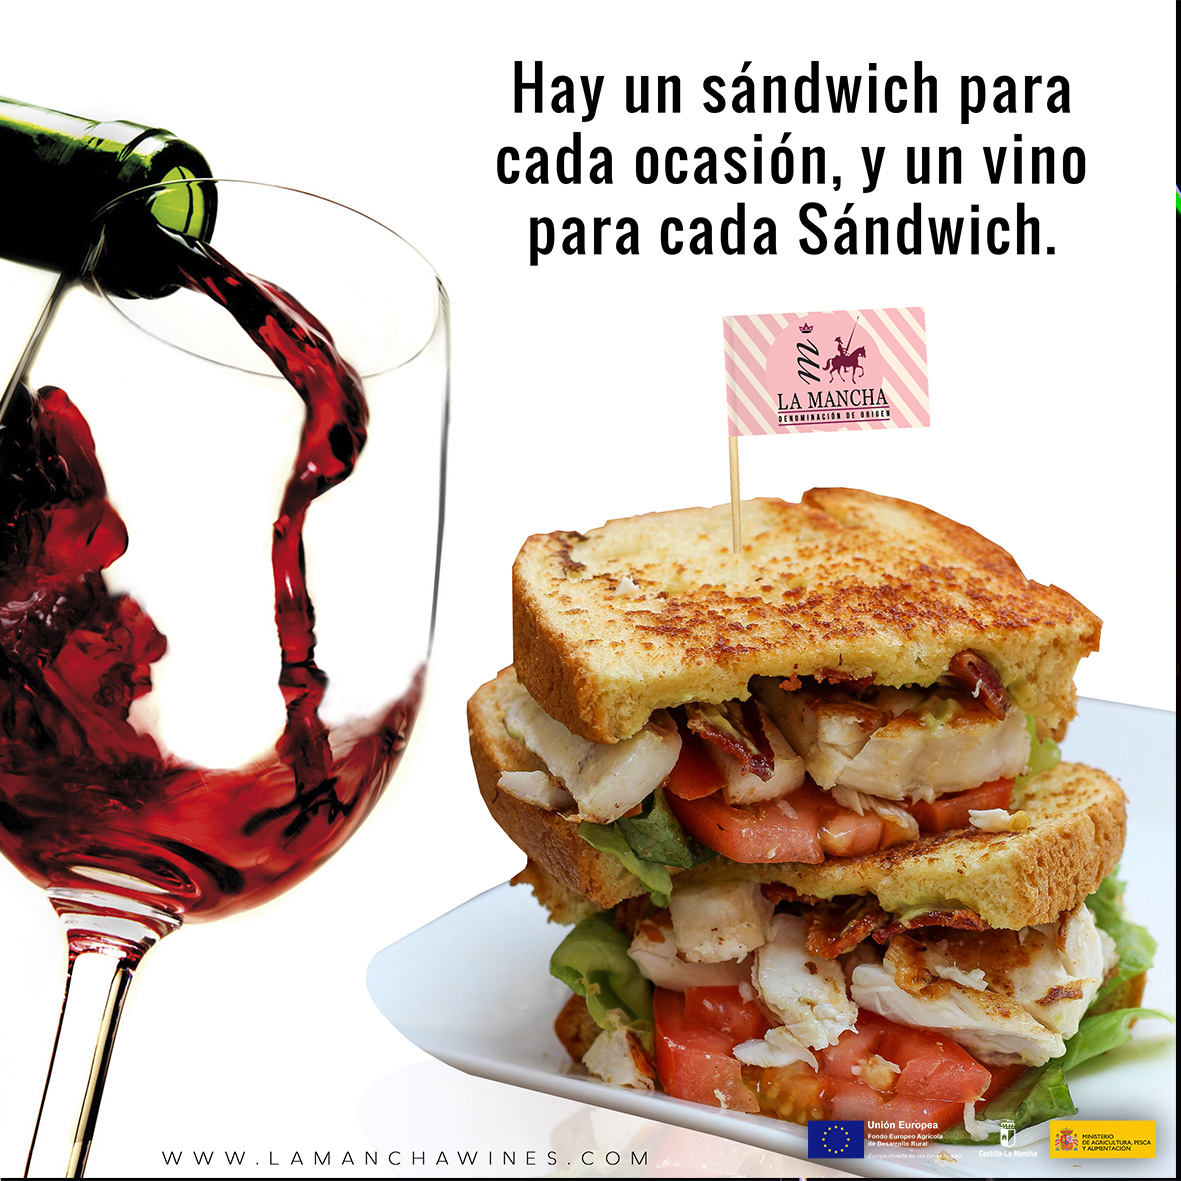 Un-vino-y-un-sandwich-para-cada-ocasion